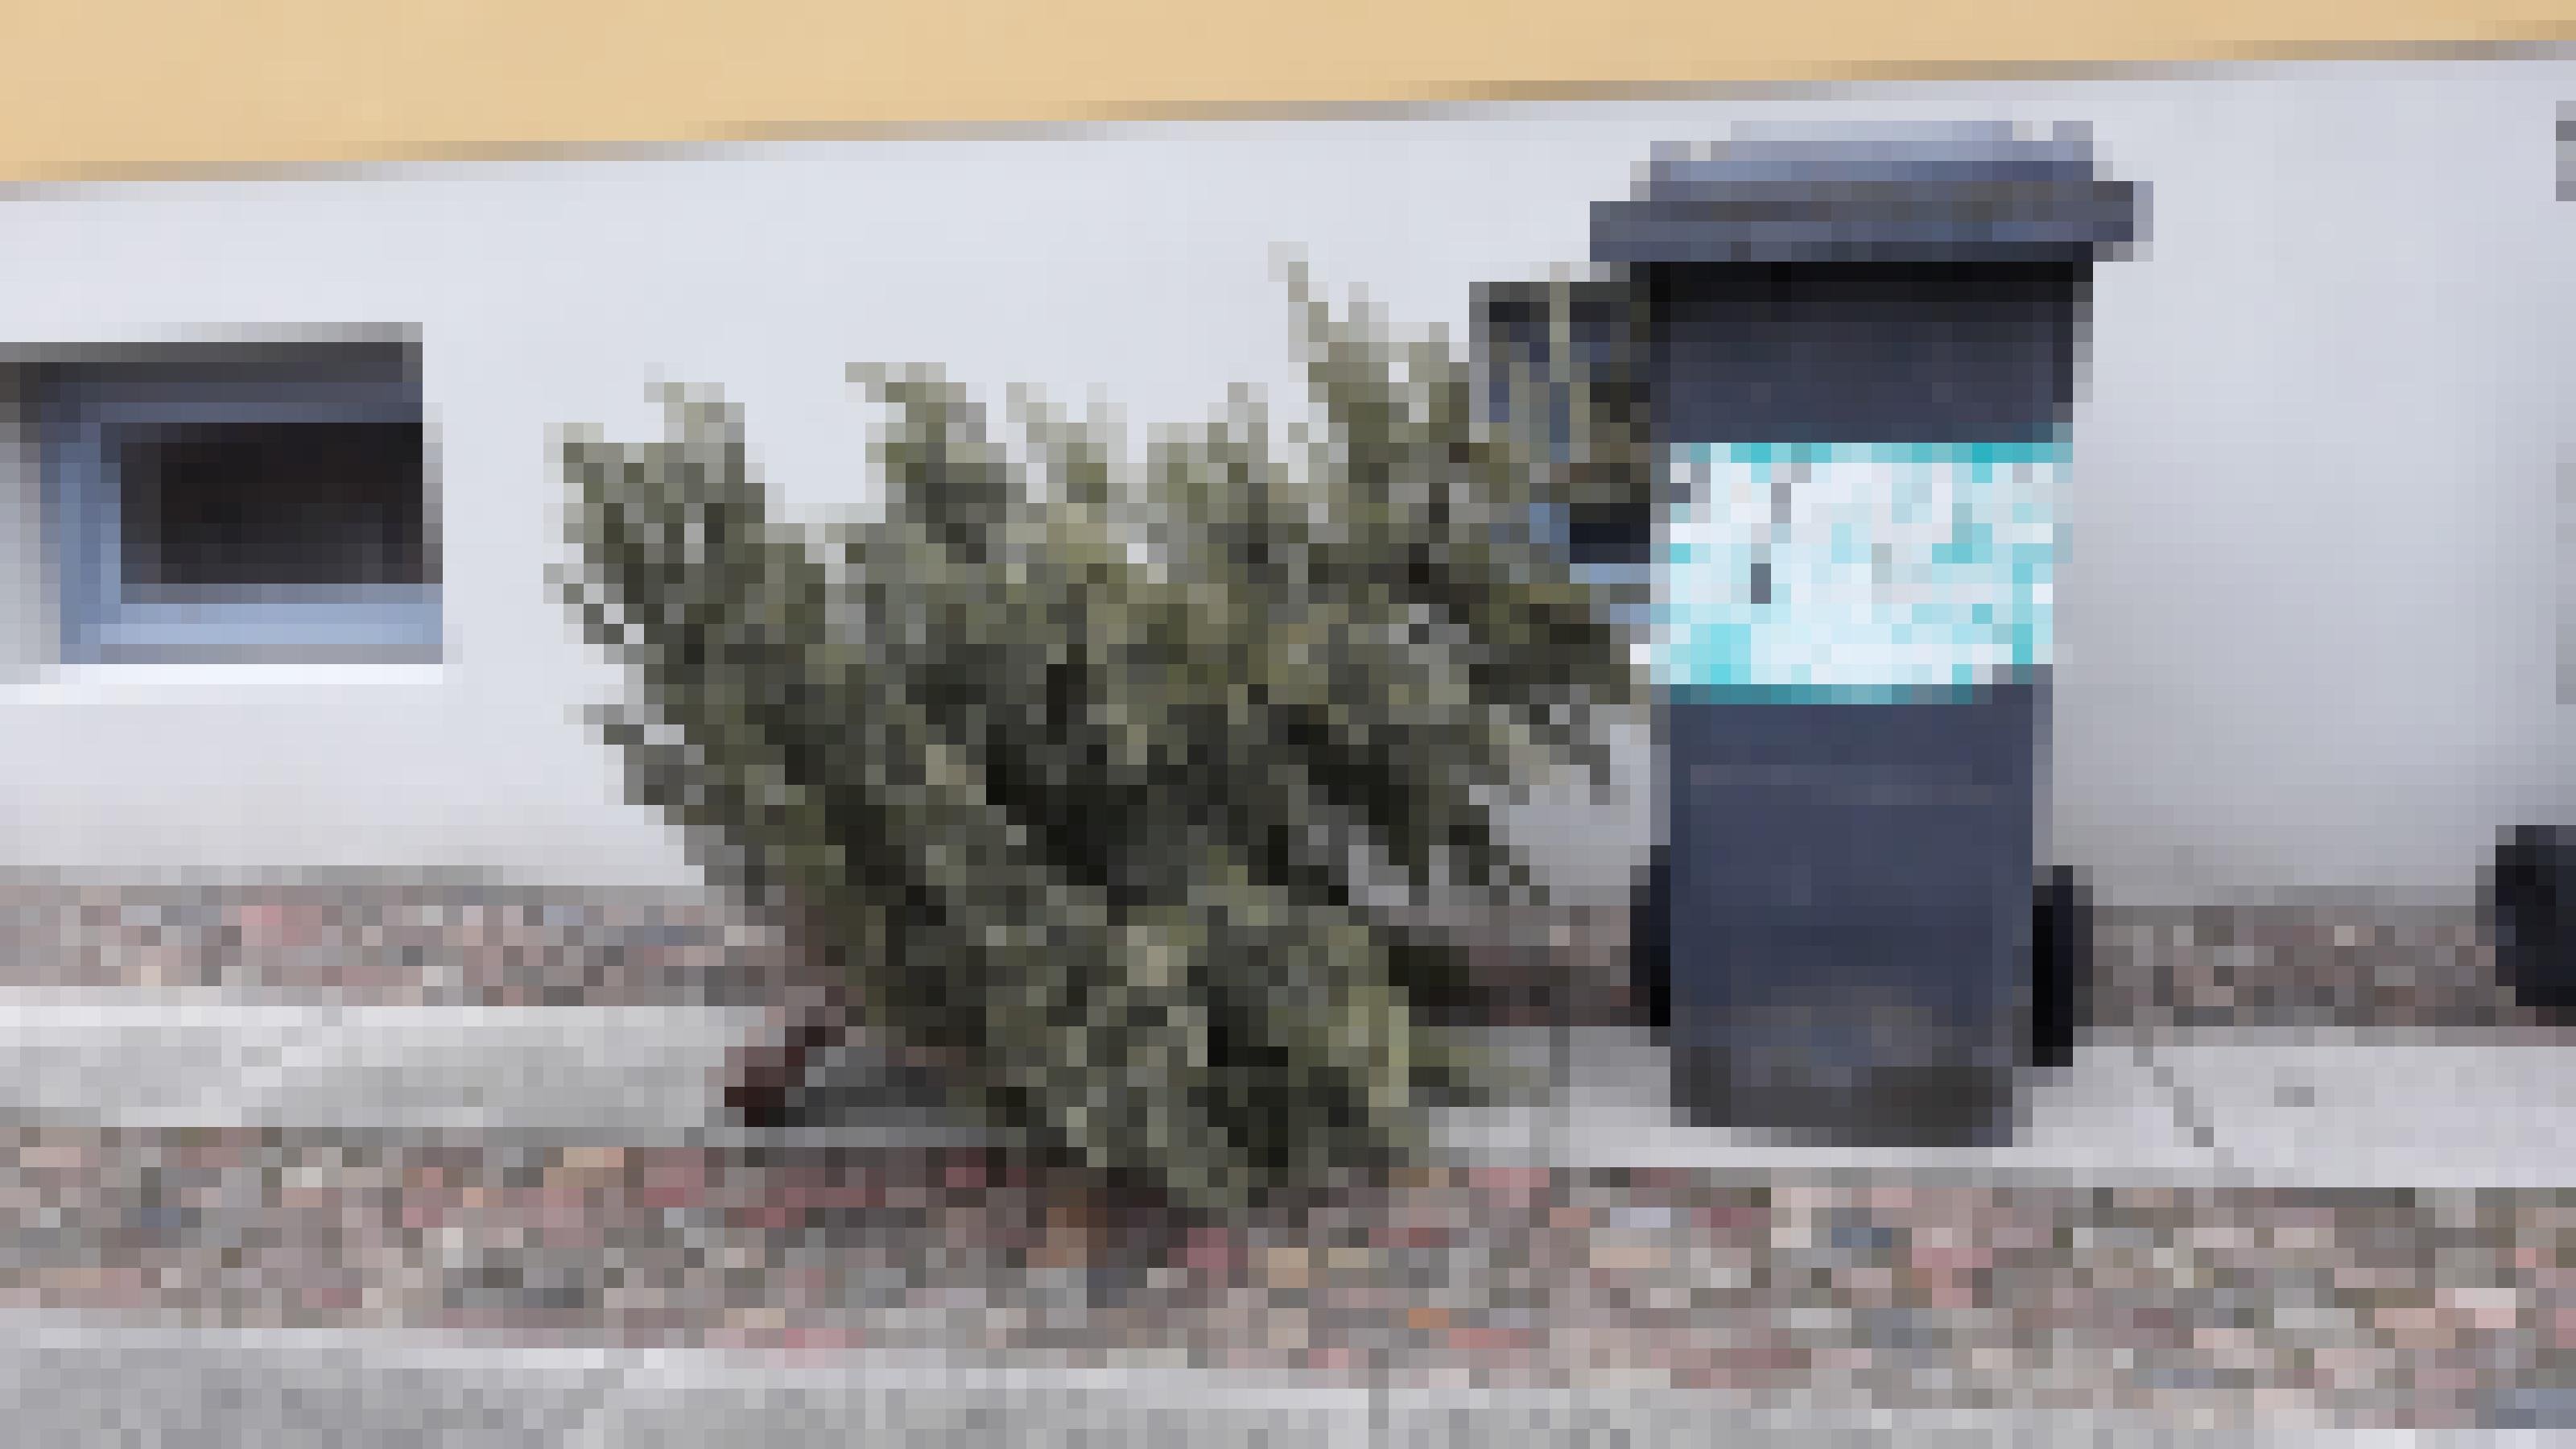 Ein vertrockneter, aber immer noch immergrüner Weihnachtsbaum  steht neben einer Mülltonne auf dem Gehweg und wartet auf das Müllauto. Die meisten Weihnachtsbäume werden thermisch entsorgt, also verbrannt